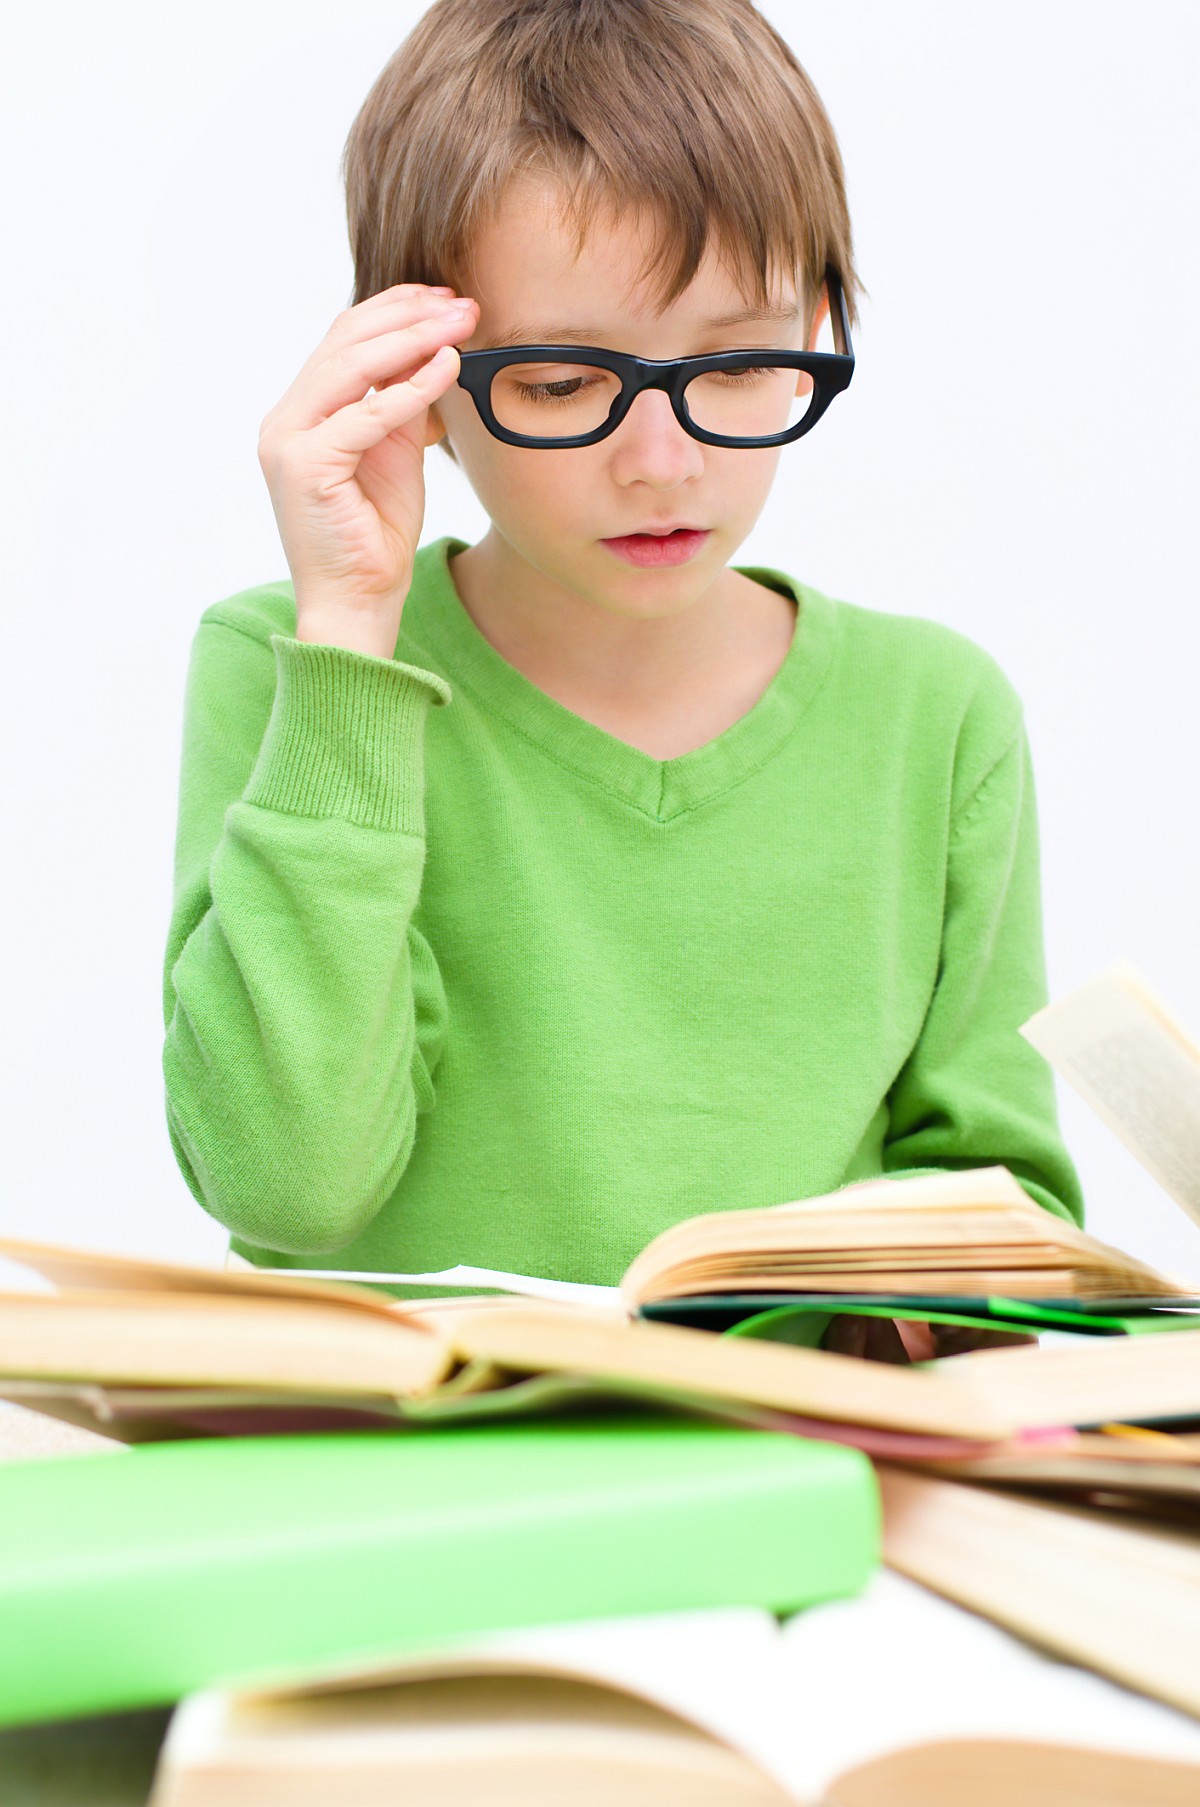 Kritický věk pro oči: Před nástupem do školy nechte dětem vyšetřit zrak u specialisty